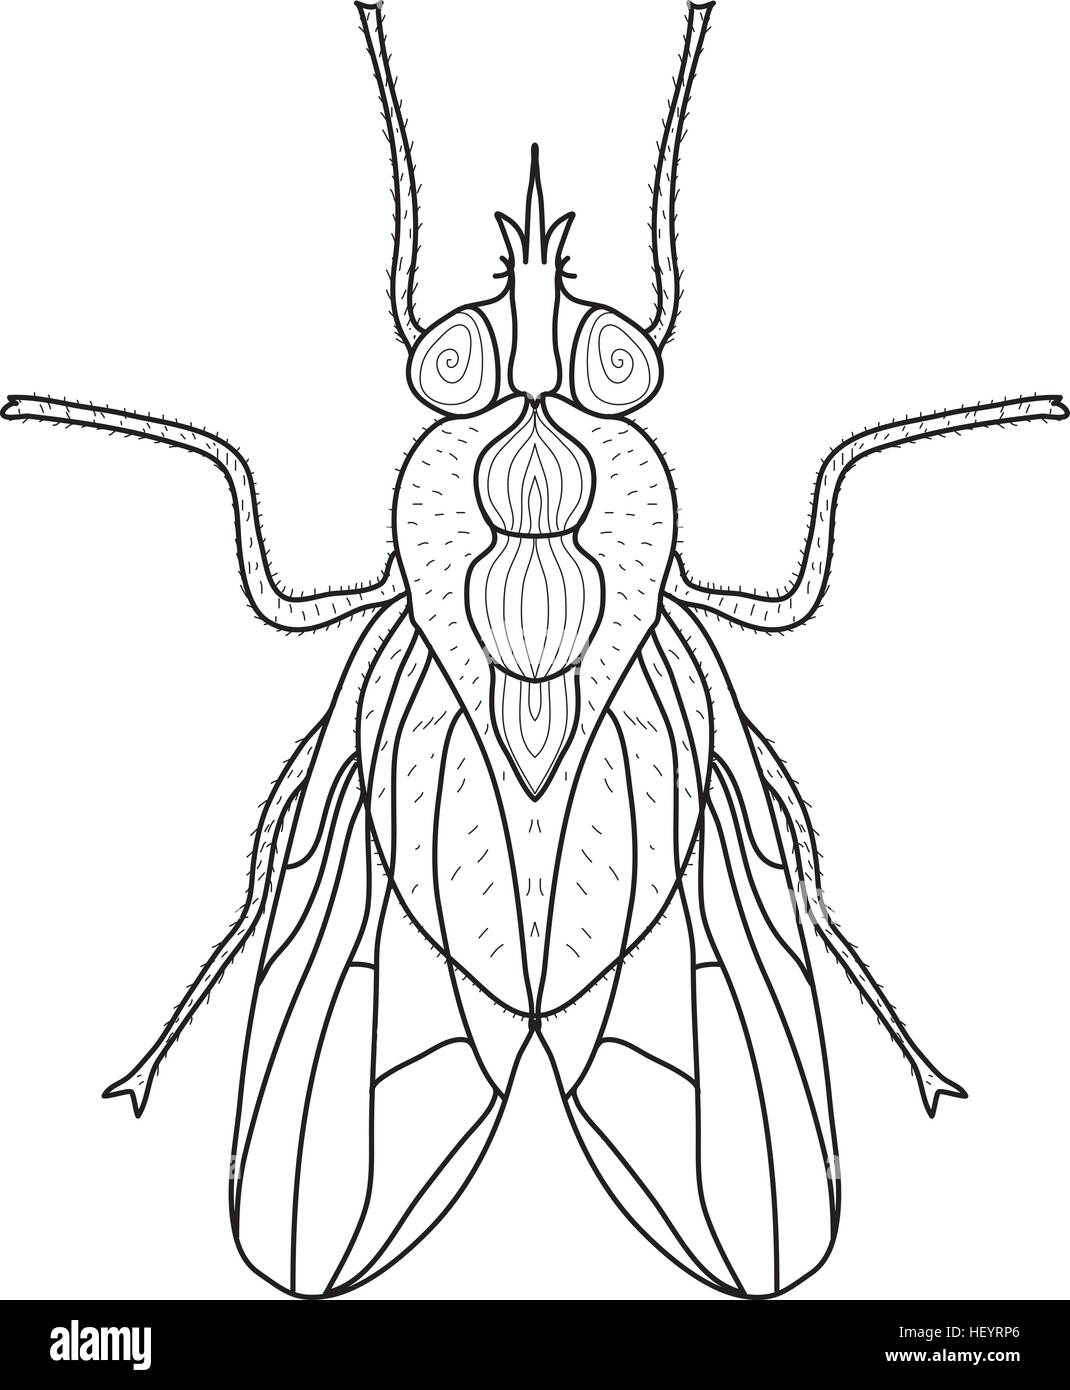 Croquis d'insectes Mouche, doodle style. Dessin au trait. Vector illustration Illustration de Vecteur